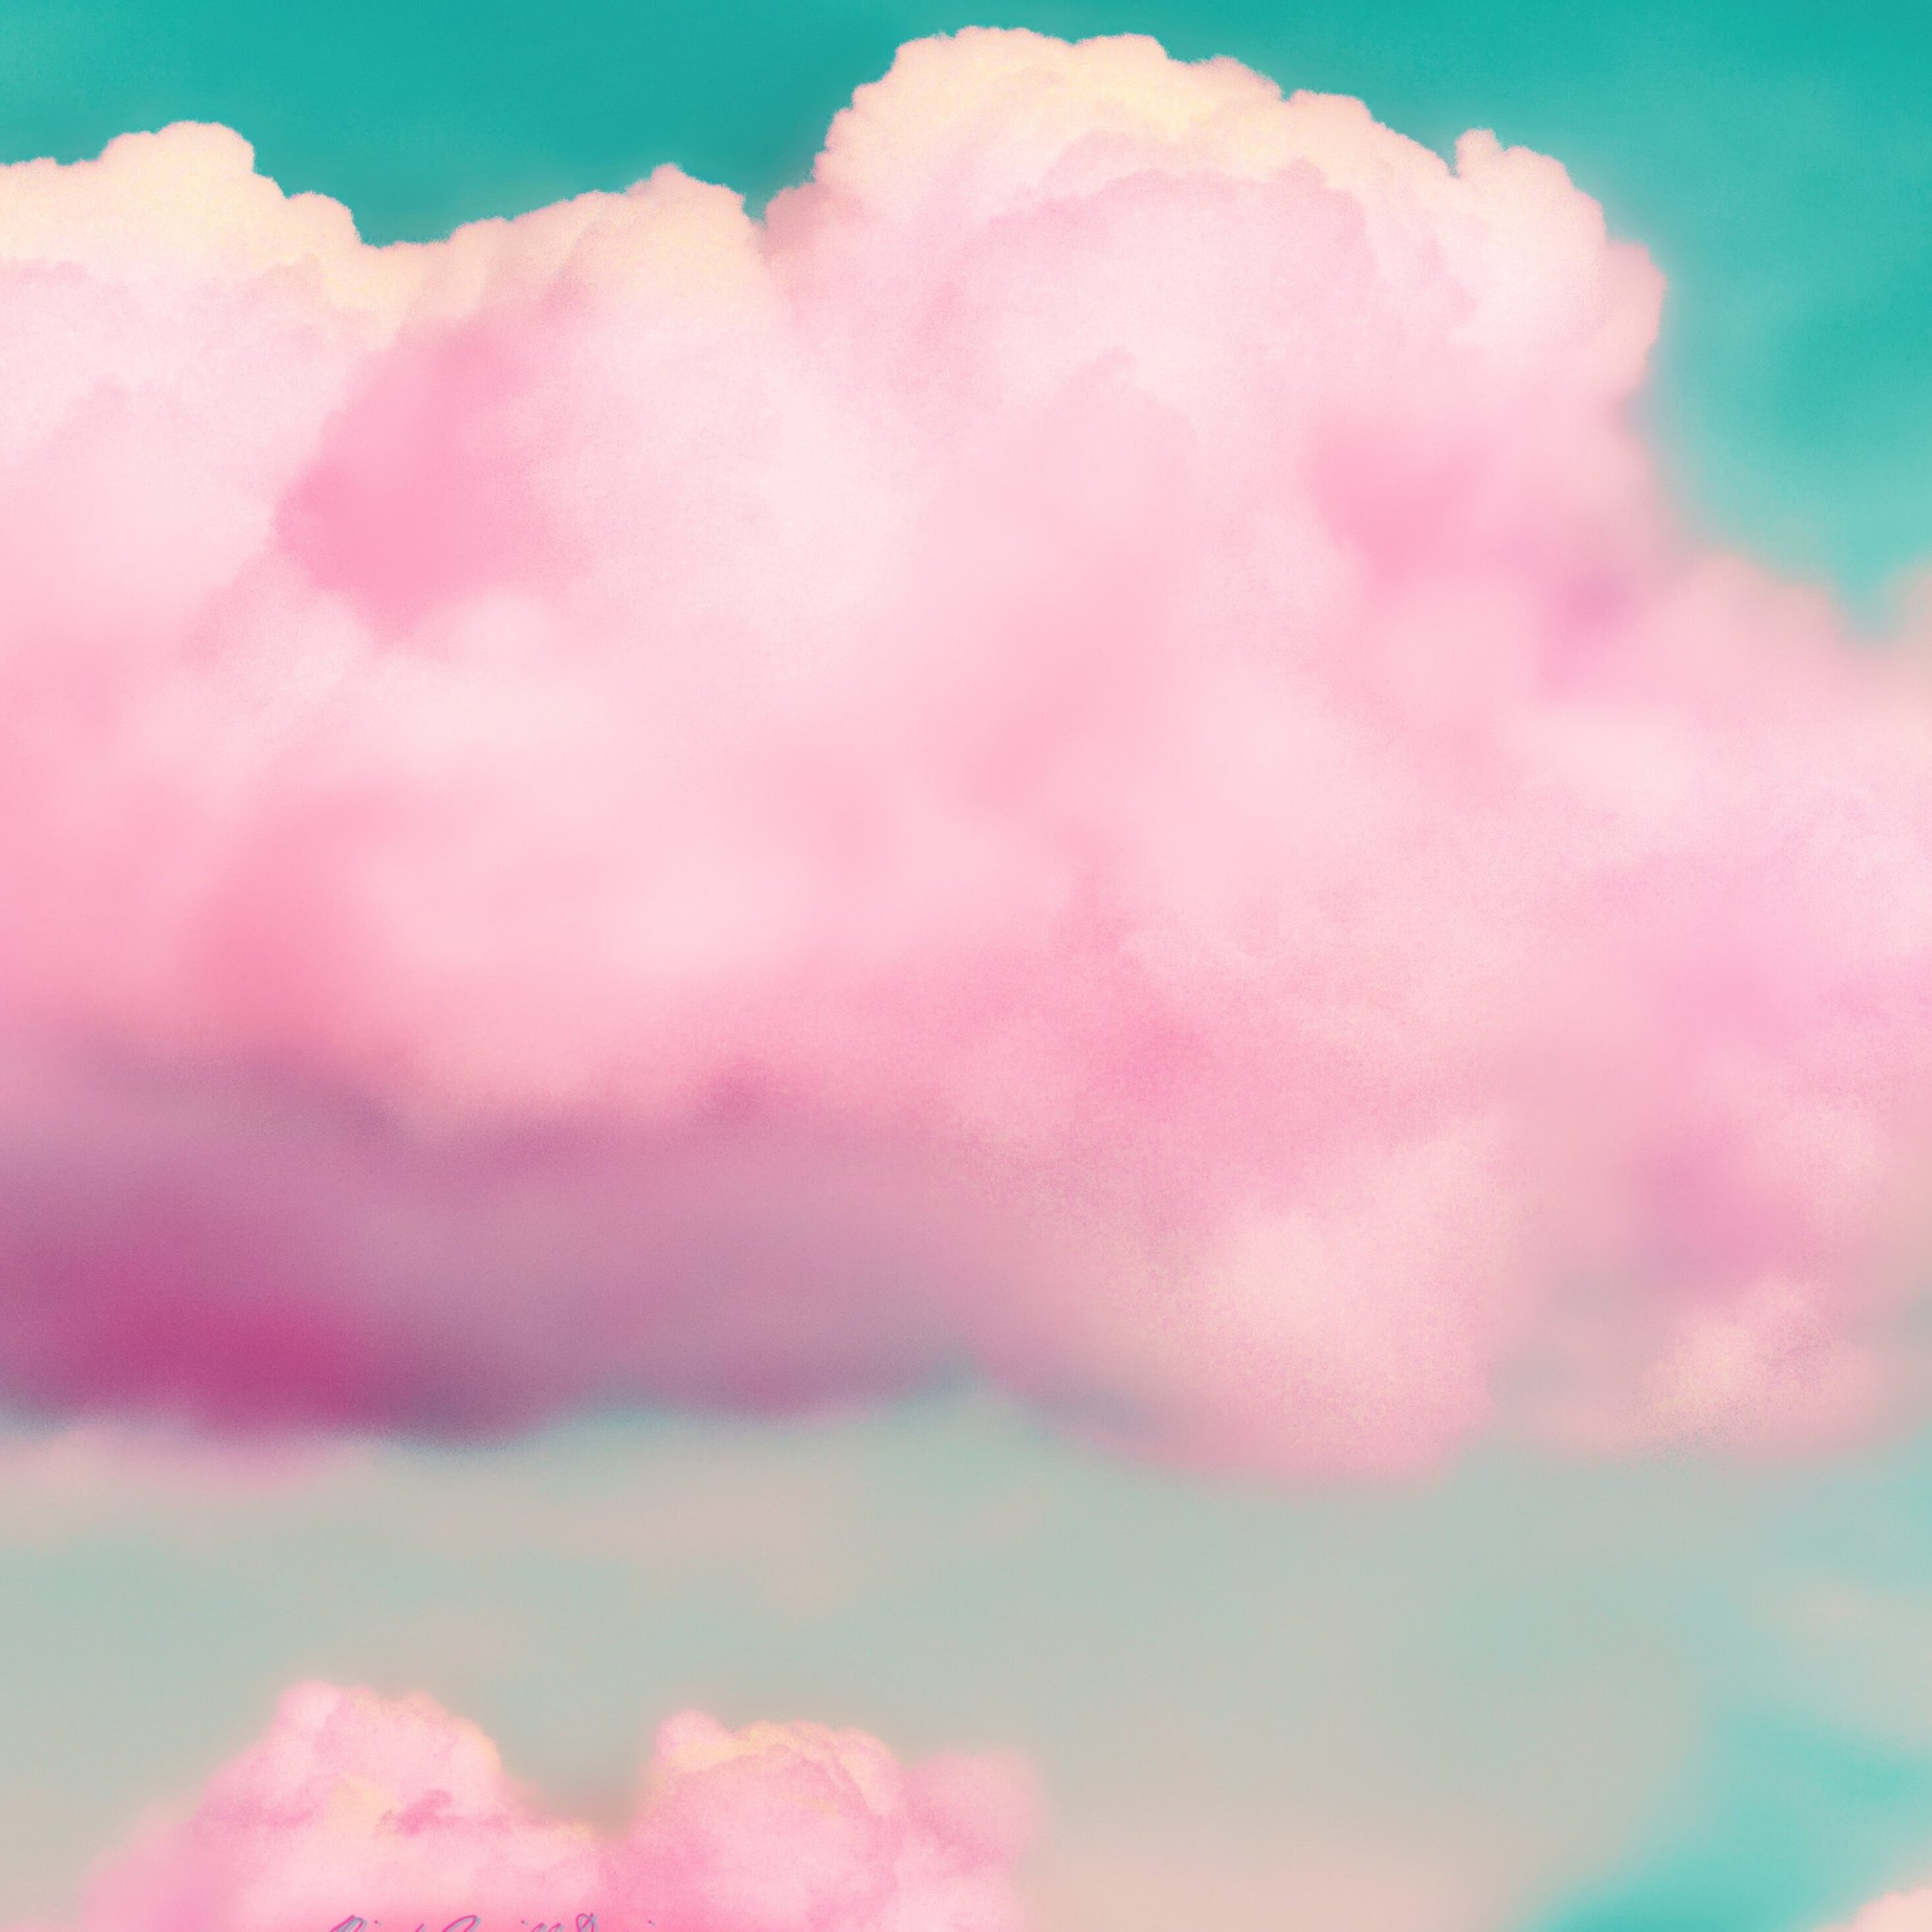 Mây hồng trong bức ảnh này chắc chắn sẽ khiến bạn trầm trồ vì sự đẹp thơ mộng của chúng. Hãy cùng khám phá hình ảnh này để thấy được bao nhiêu sự tinh tế và sự mê hoặc.